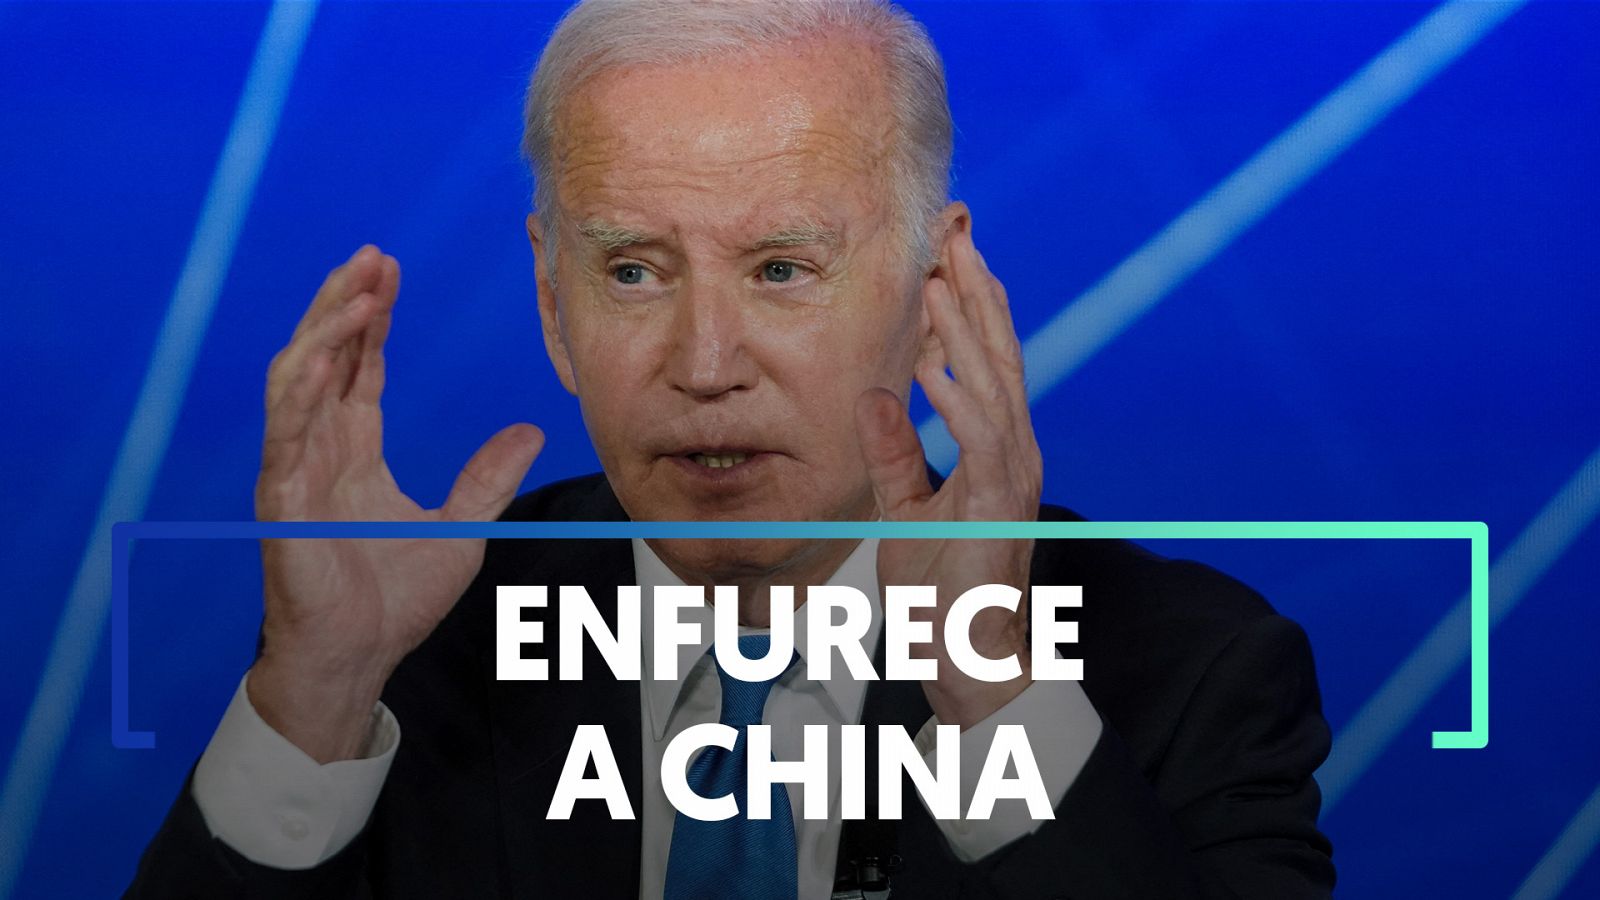 Biden llama a Xi Jinping "dictador" después de la visita de Blinken